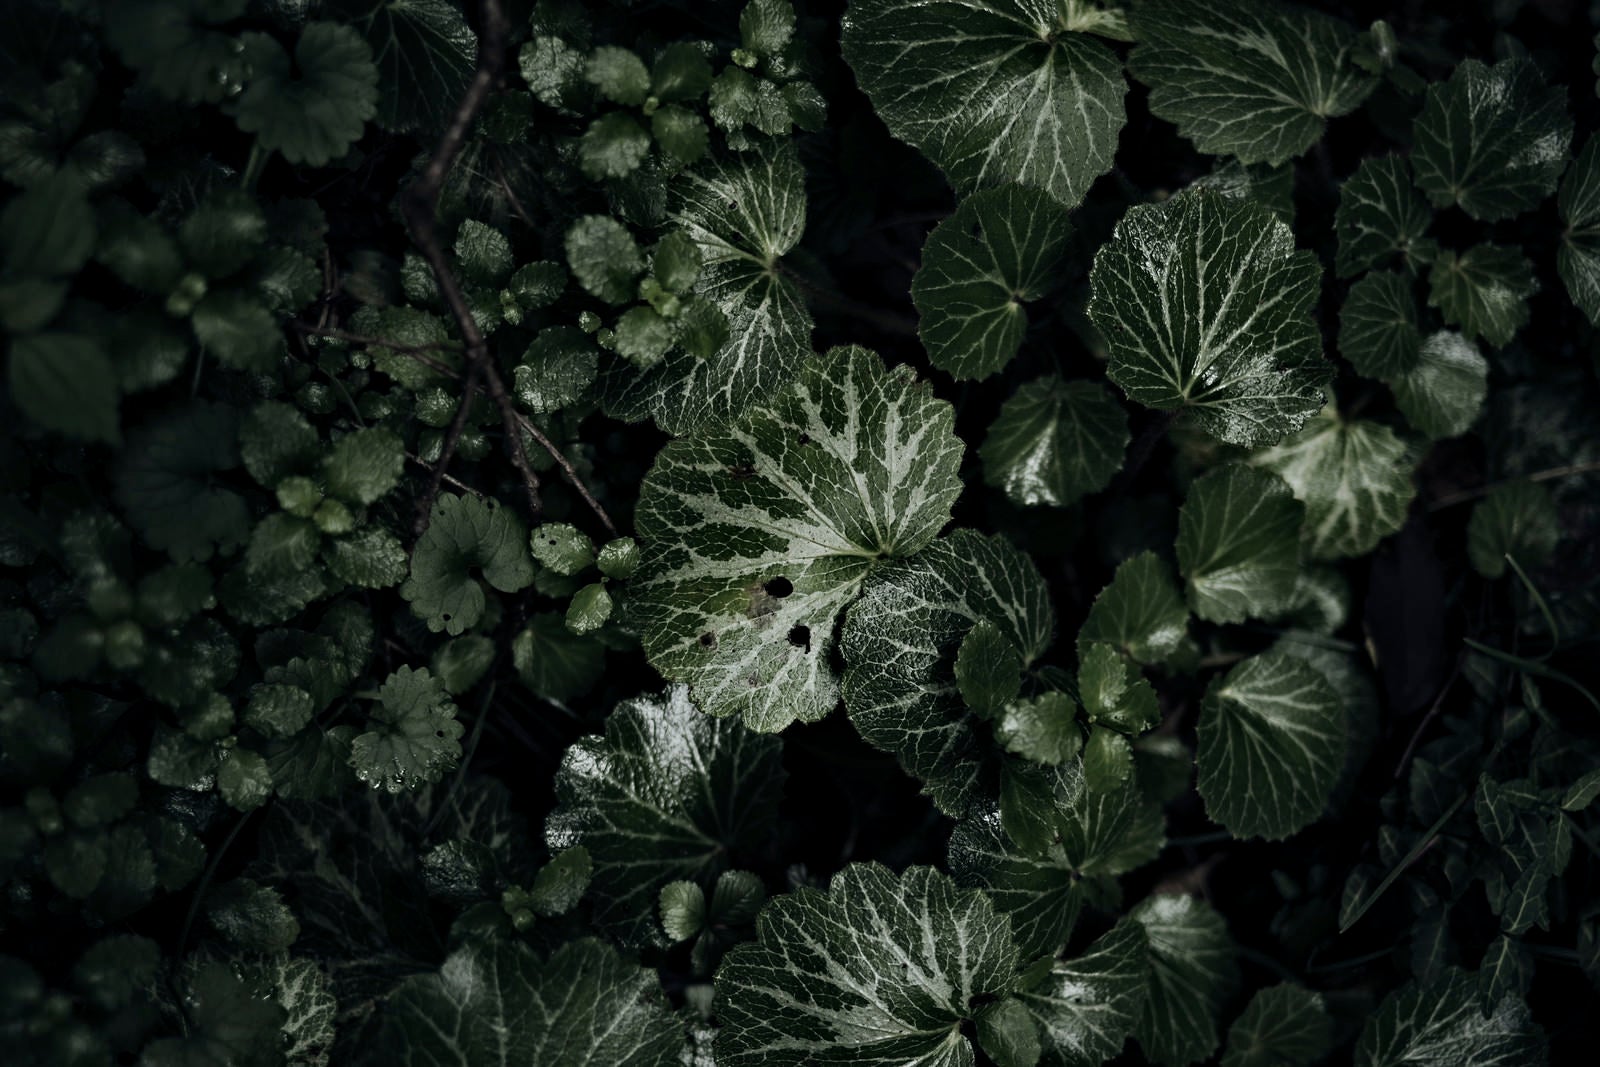 「銀光沢を放つ白と緑の葉」の写真